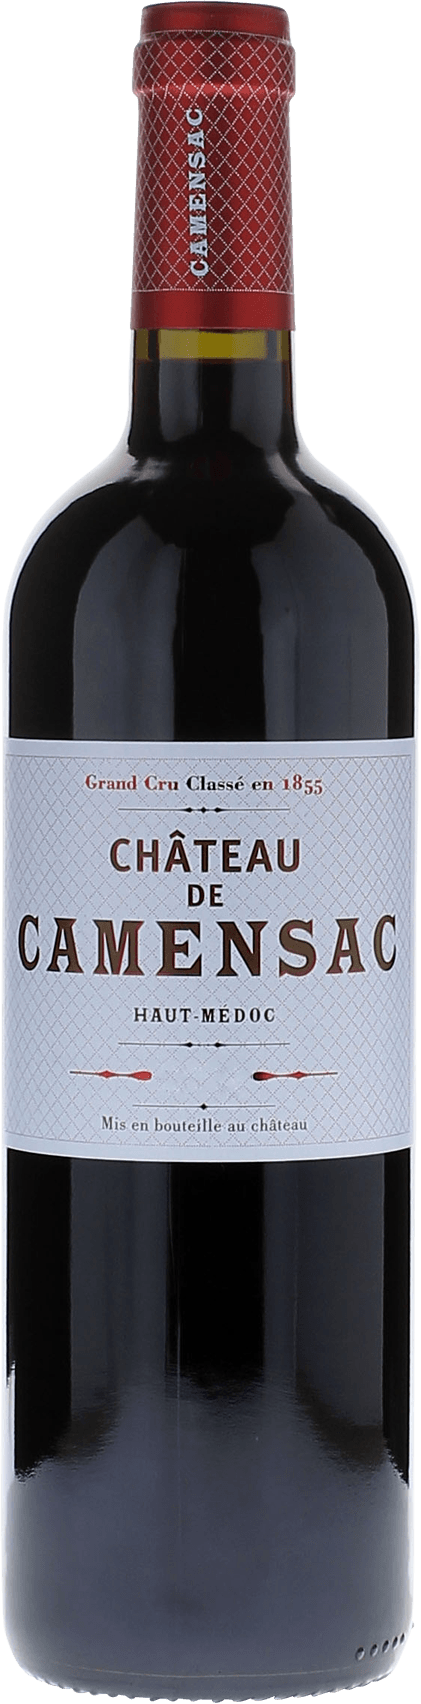 Camensac 1989 5me Grand cru class Mdoc, Bordeaux rouge